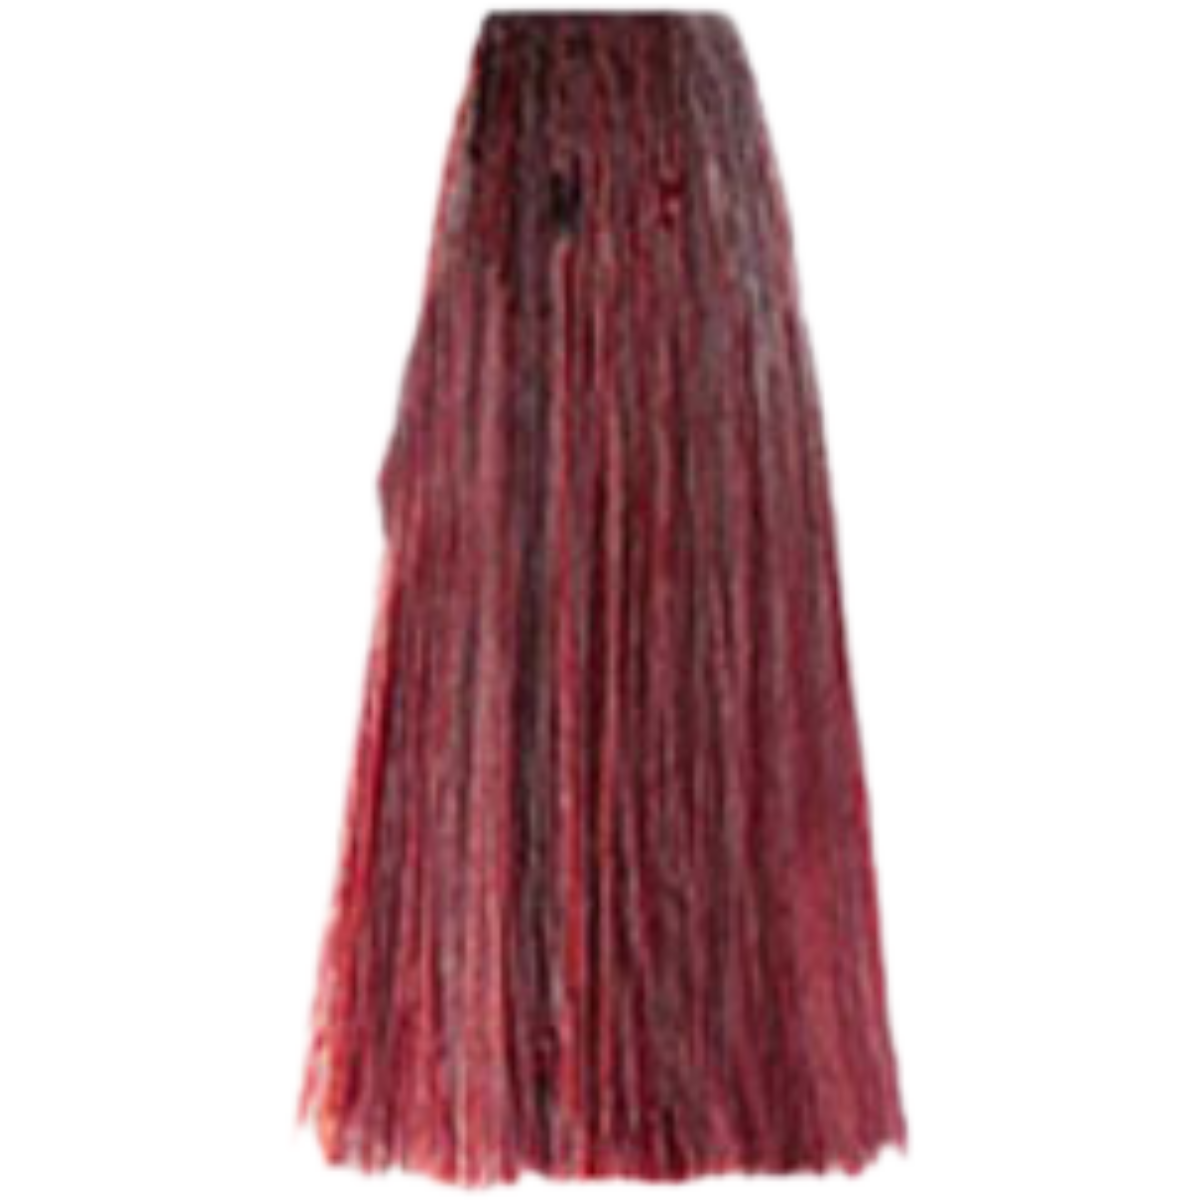 צבע שיער 7.66 INTENSE RED BLONDE פארמויטה FarmaVita צבע לשיער 100 גרם